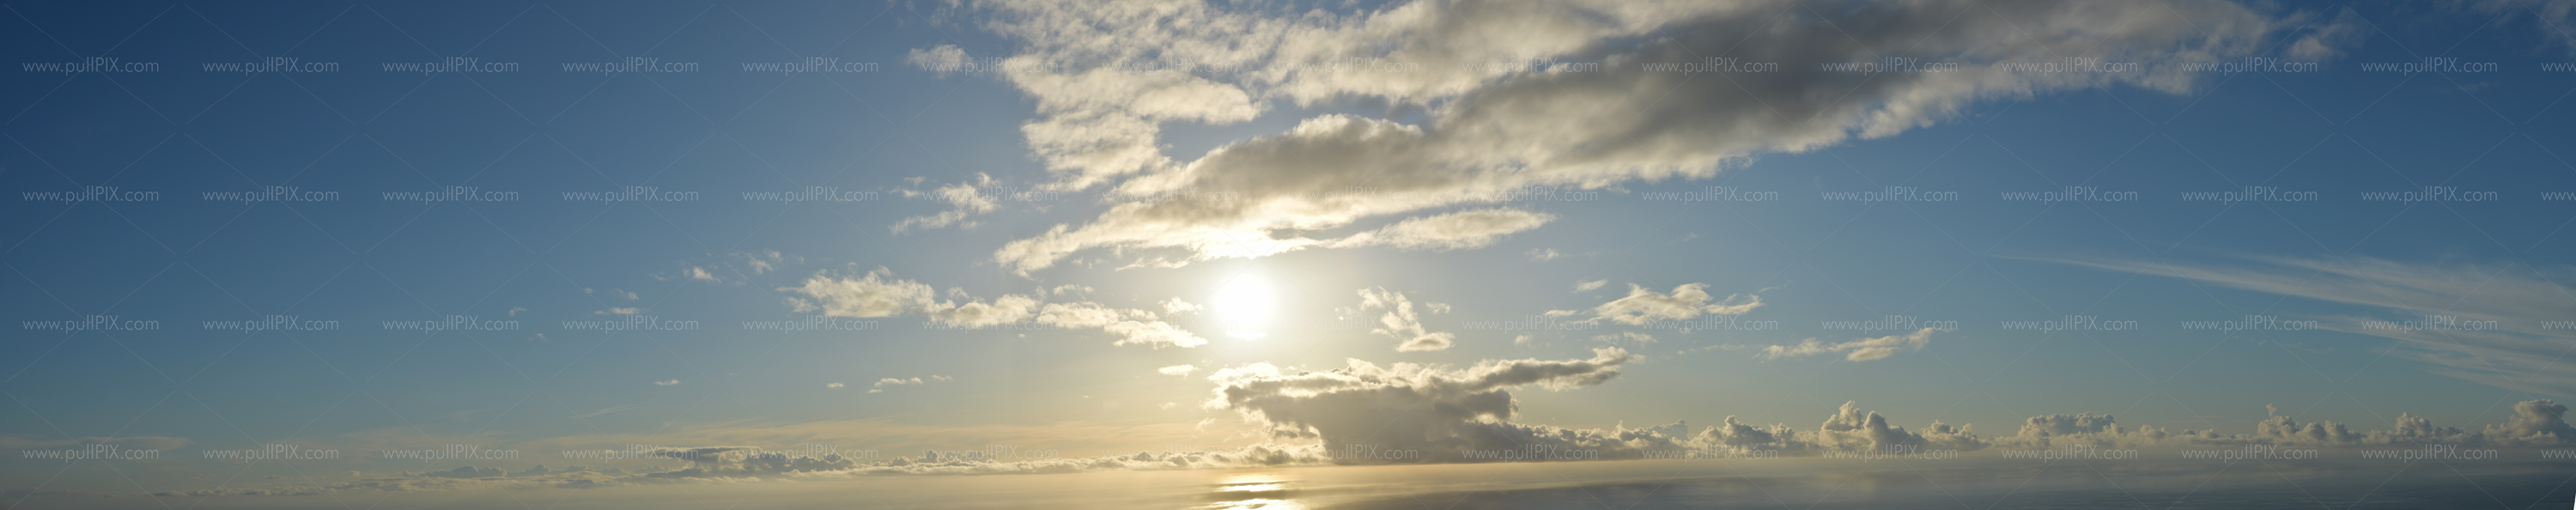 Preview Sonnenuntergang La Palma.jpg